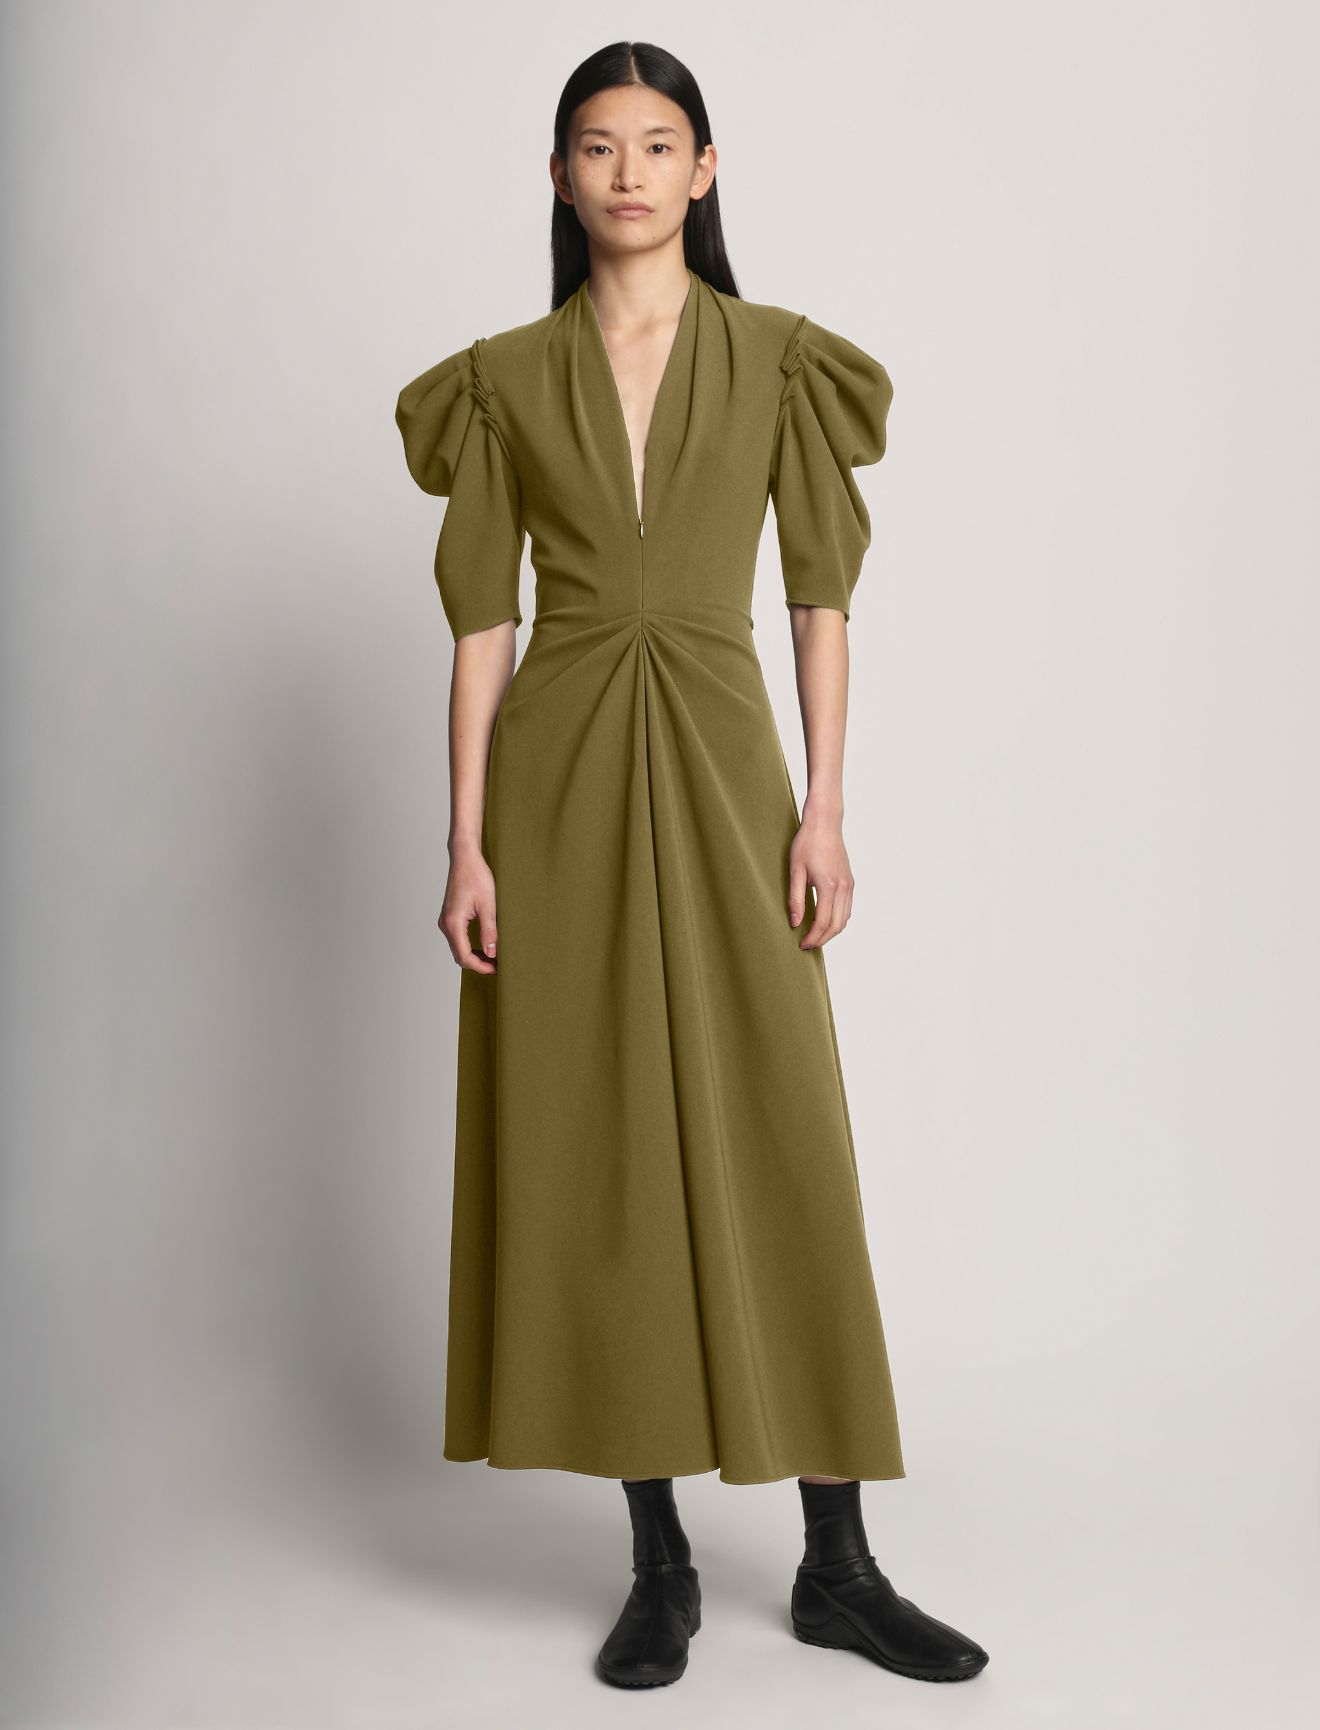 Matte Viscose Crepe Dress in green | Proenza Schouler